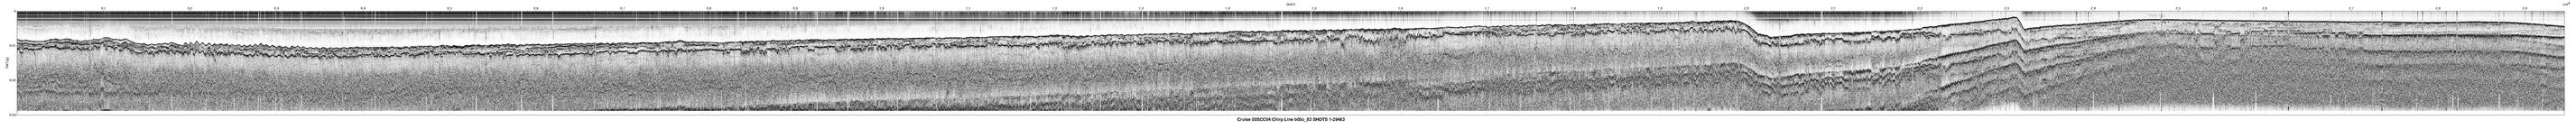 00SCC04 b00c_83 seismic profile image